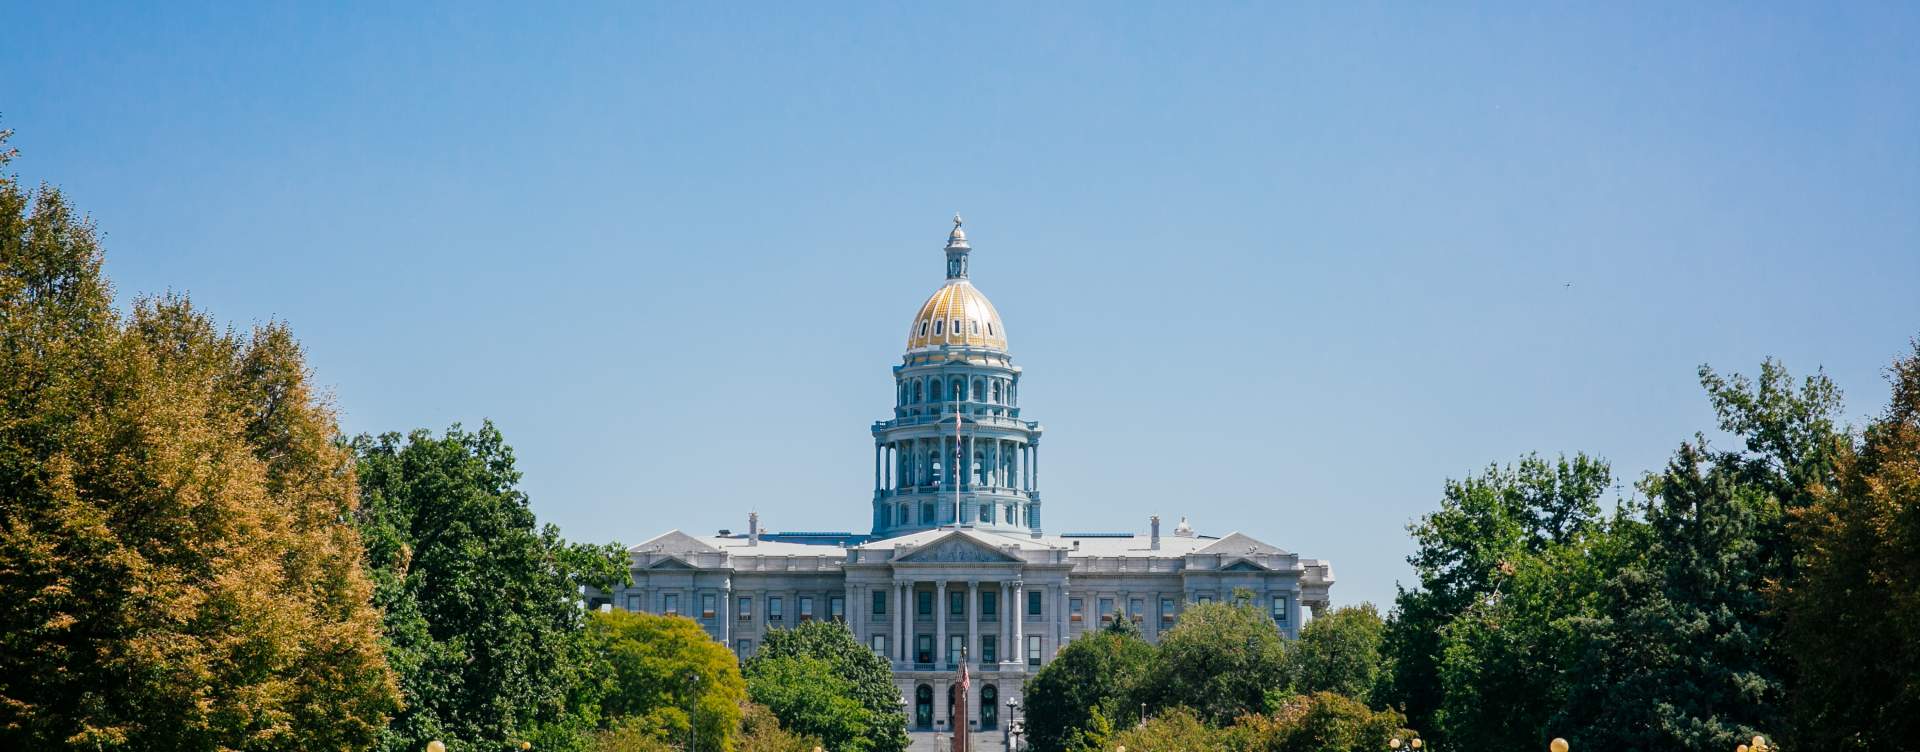 Denver, Colorado State Capitol Building